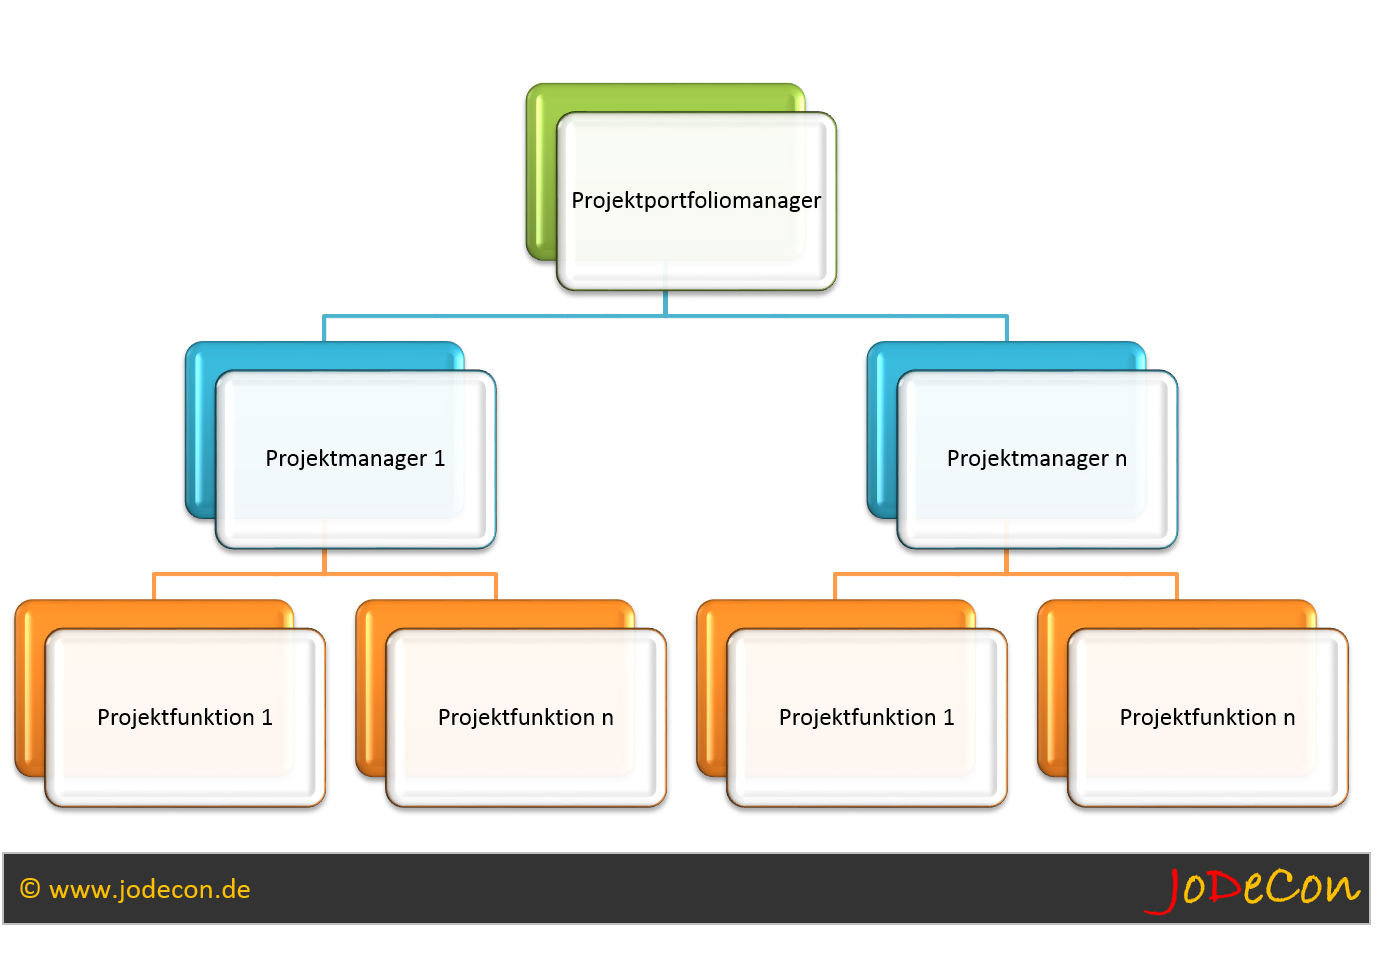 Hierarchie Projektportfoliomanagement